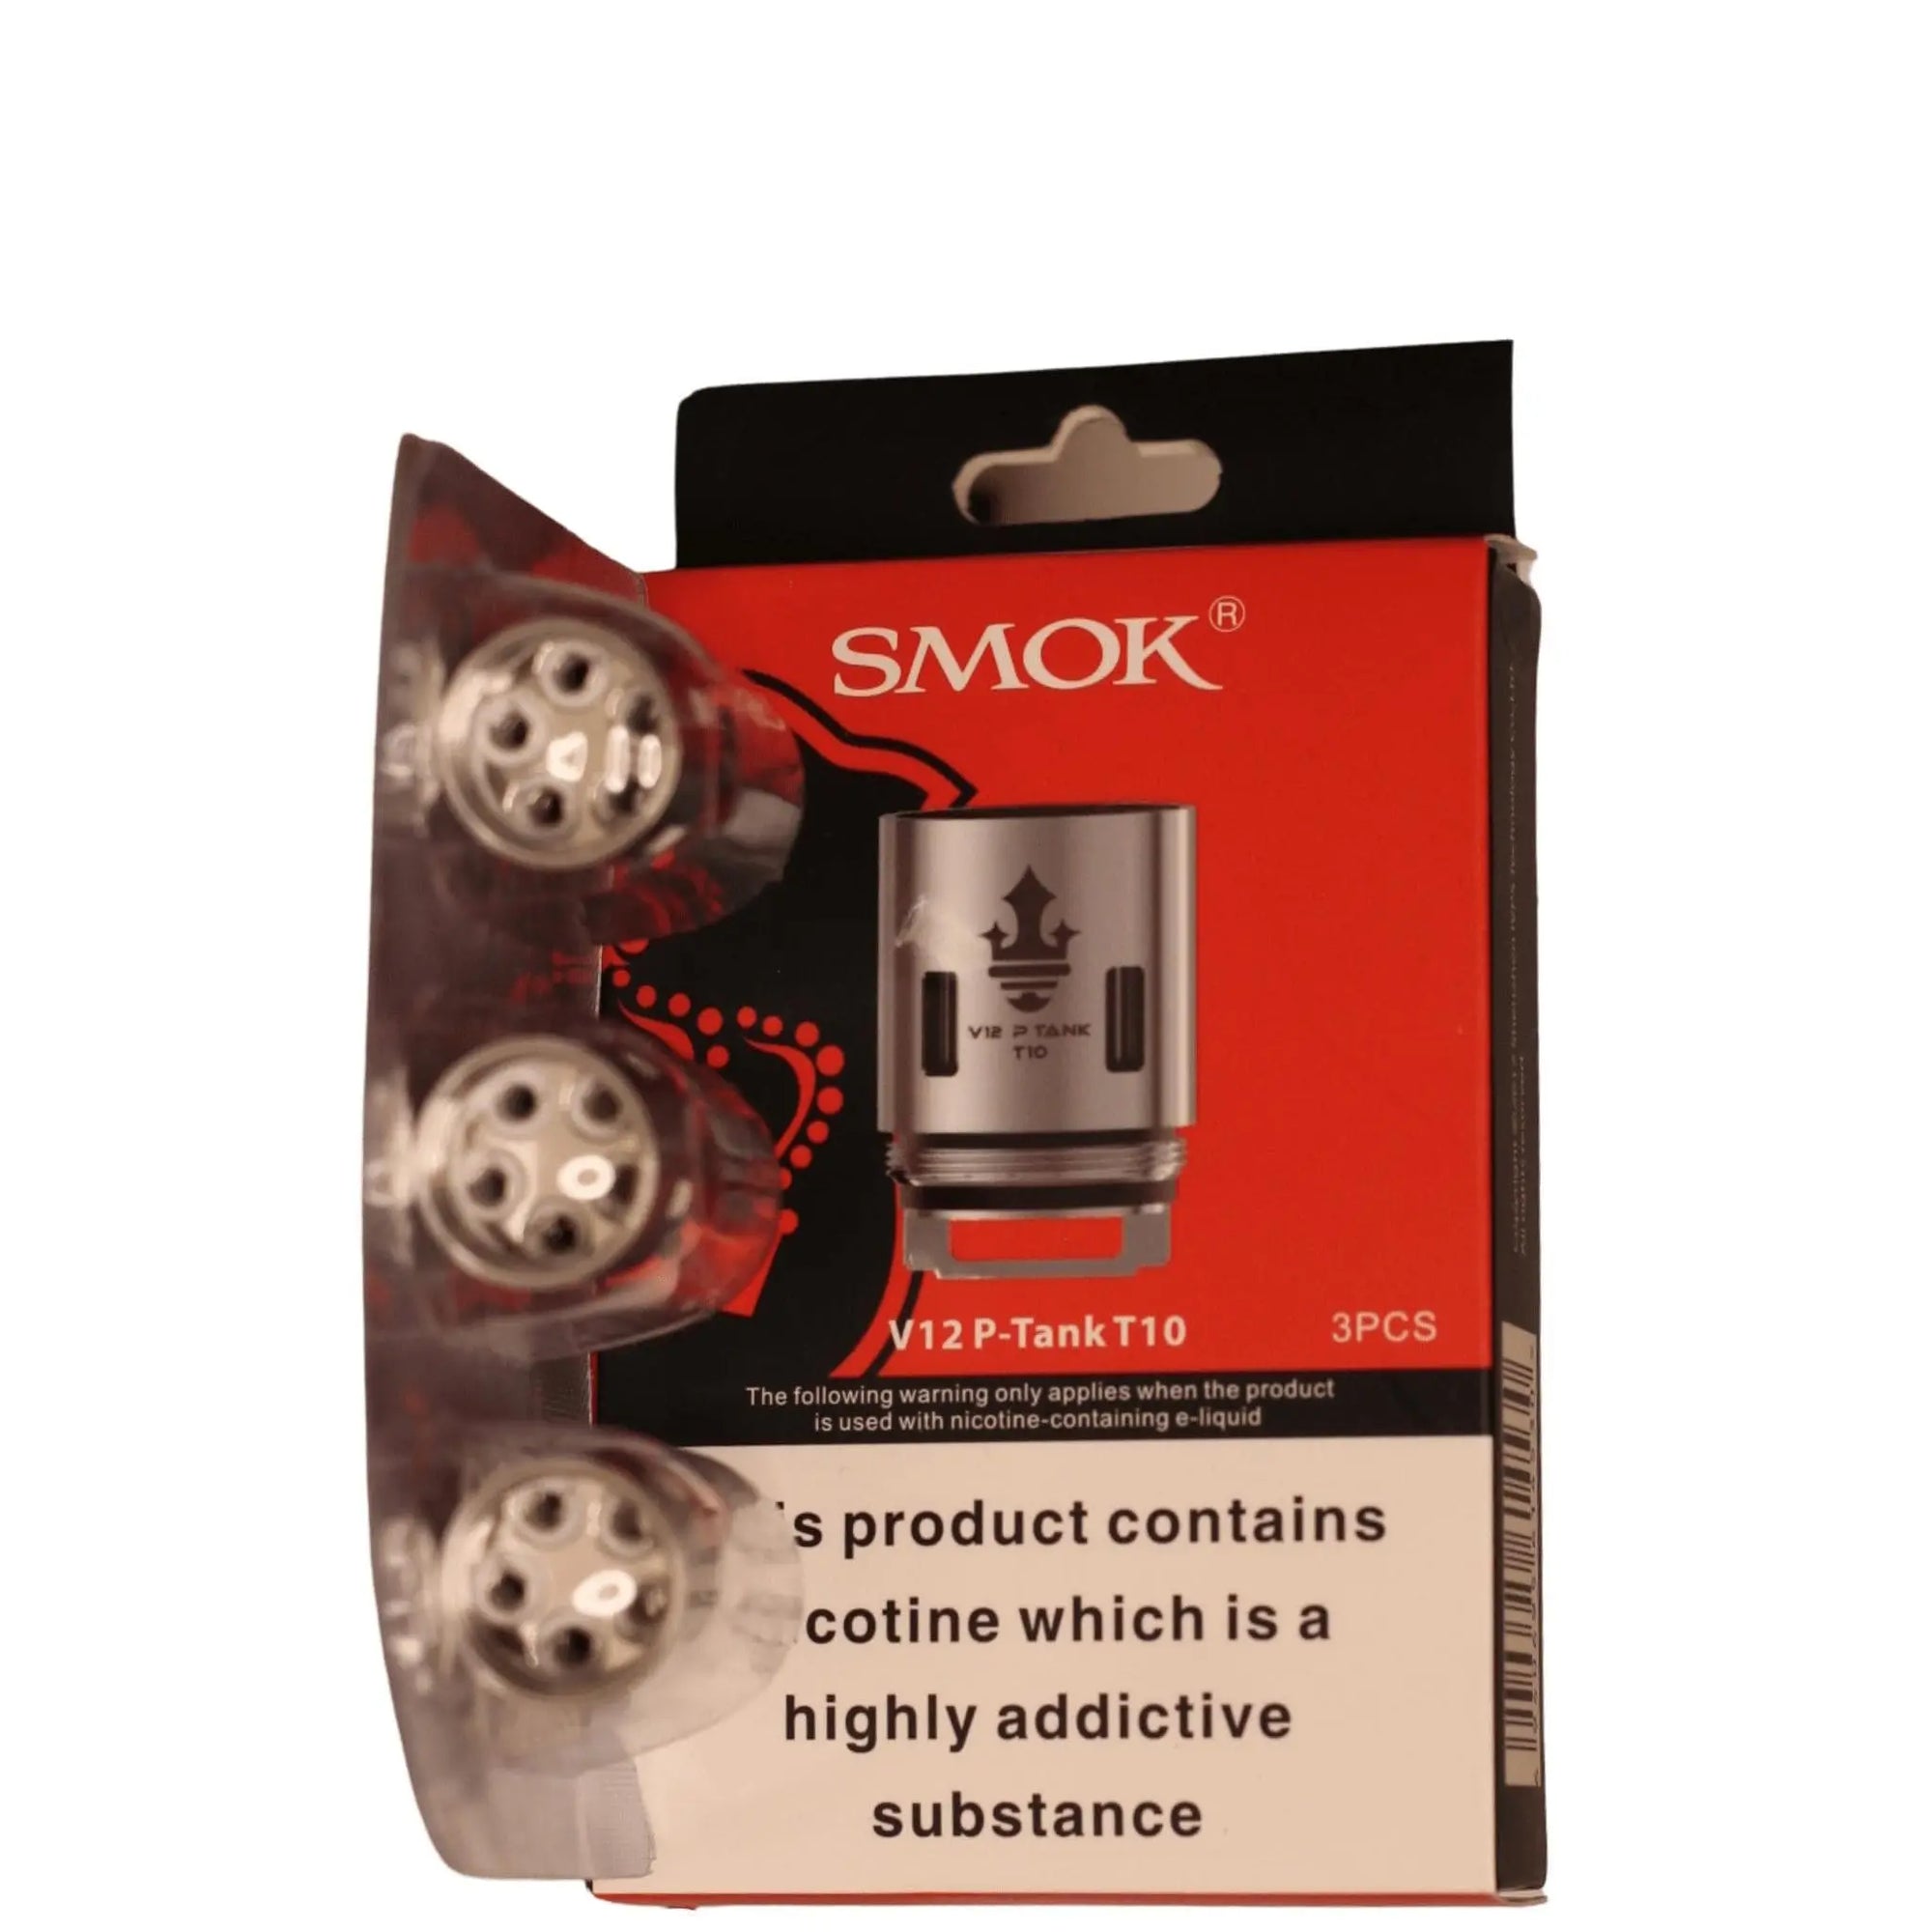 Smok TFV12 Prince Coils Smok 12.50